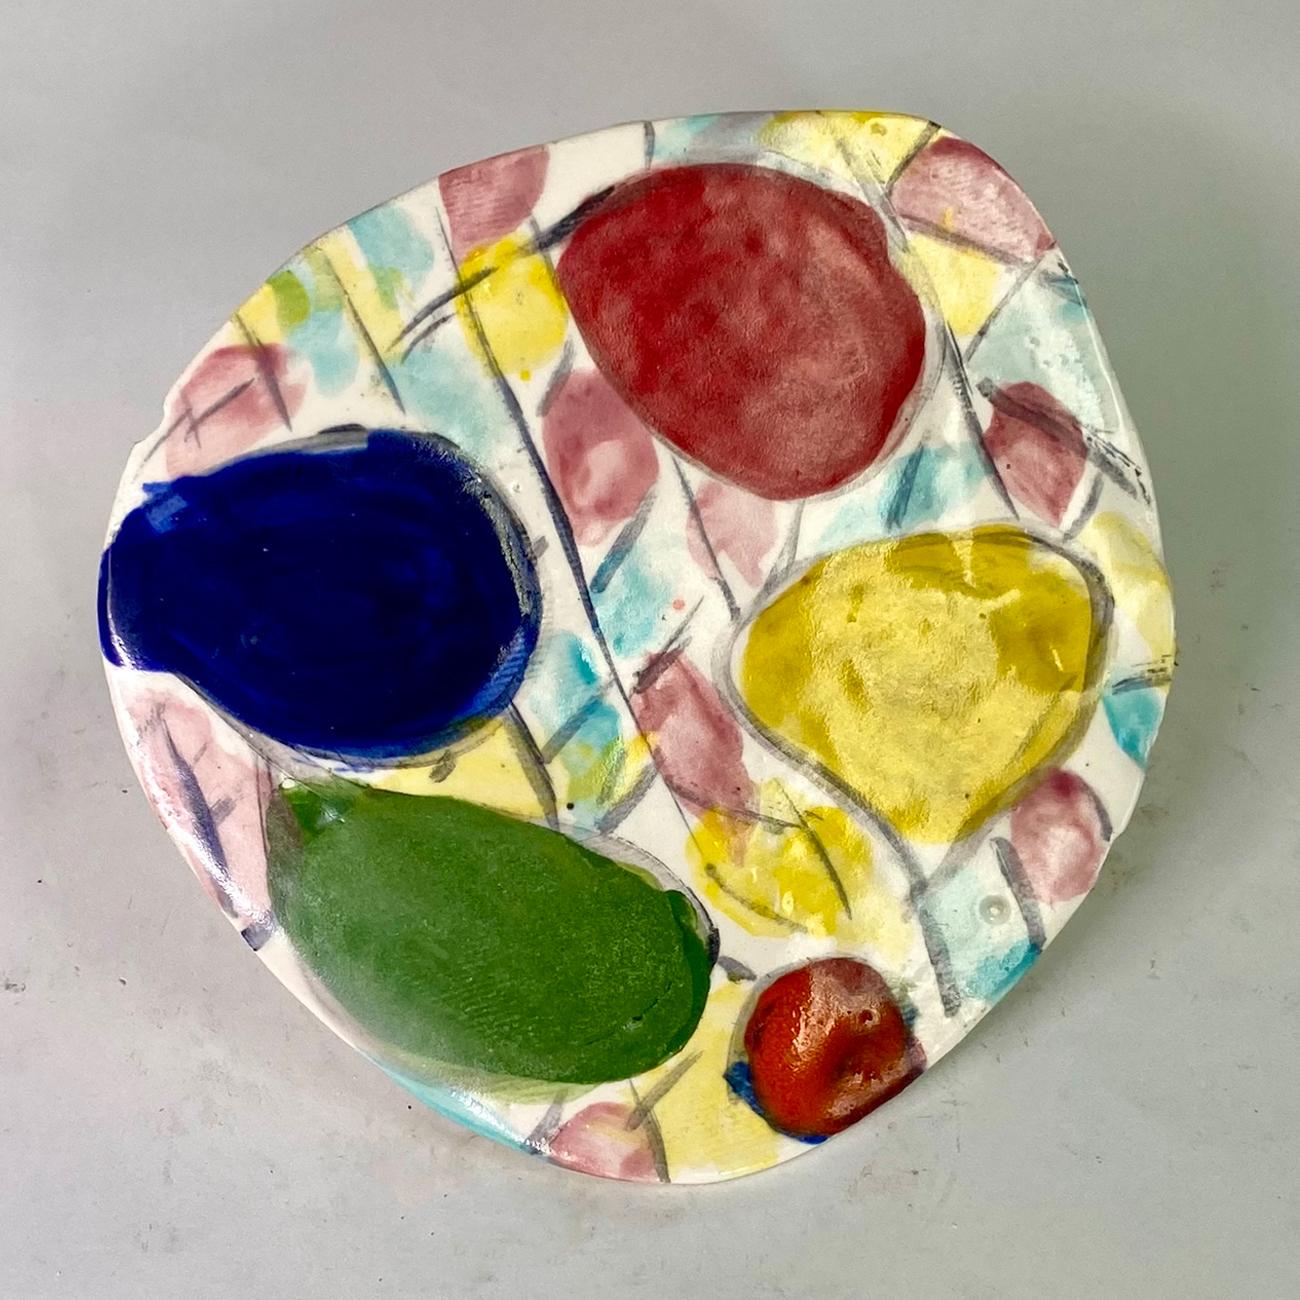 Untitled XXIV, by Charo Oquet
Glazed ceramic and enamel
Overall size: 27 H in x 23.5 W in. x 1 D in. 
Set of 14 Glazed Ceramic Discs
Individual size: 
1. 6” x 6” x 0.25